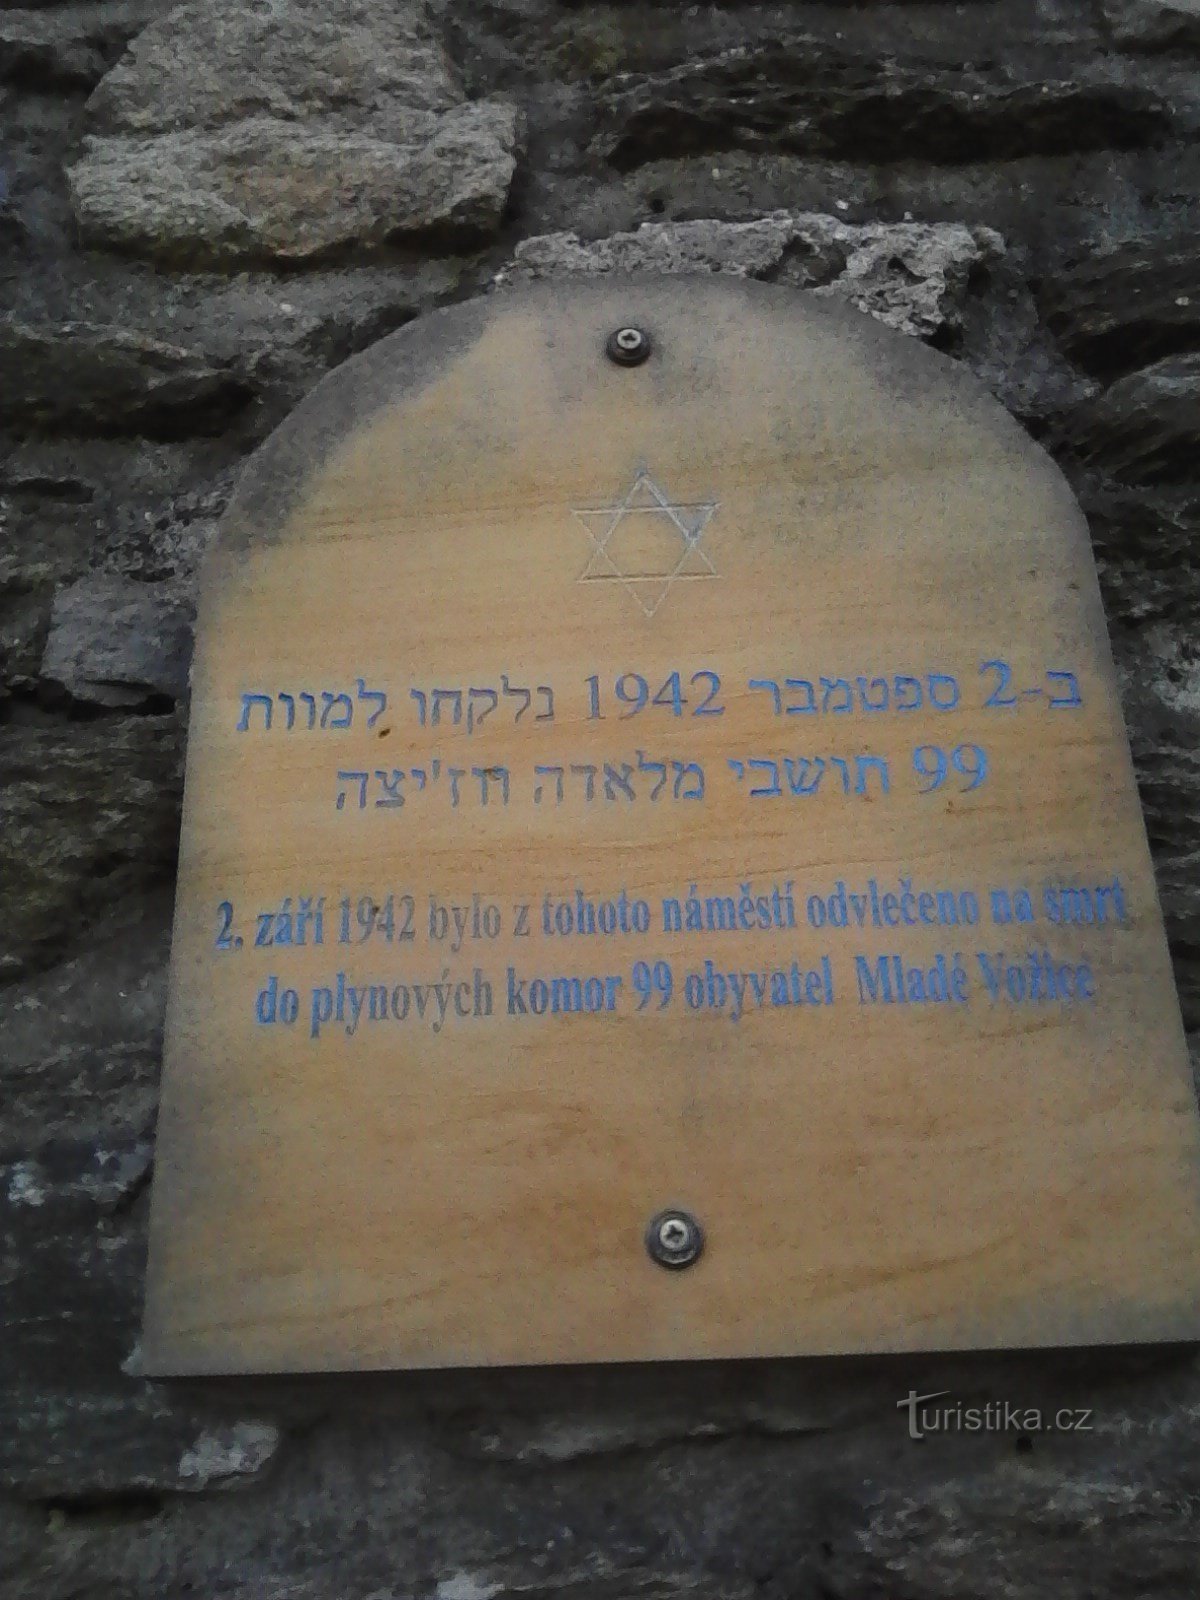 1. Μια πλάκα που μνημονεύει τη φρίκη του πολέμου στον τοίχο μπροστά από την εκκλησία